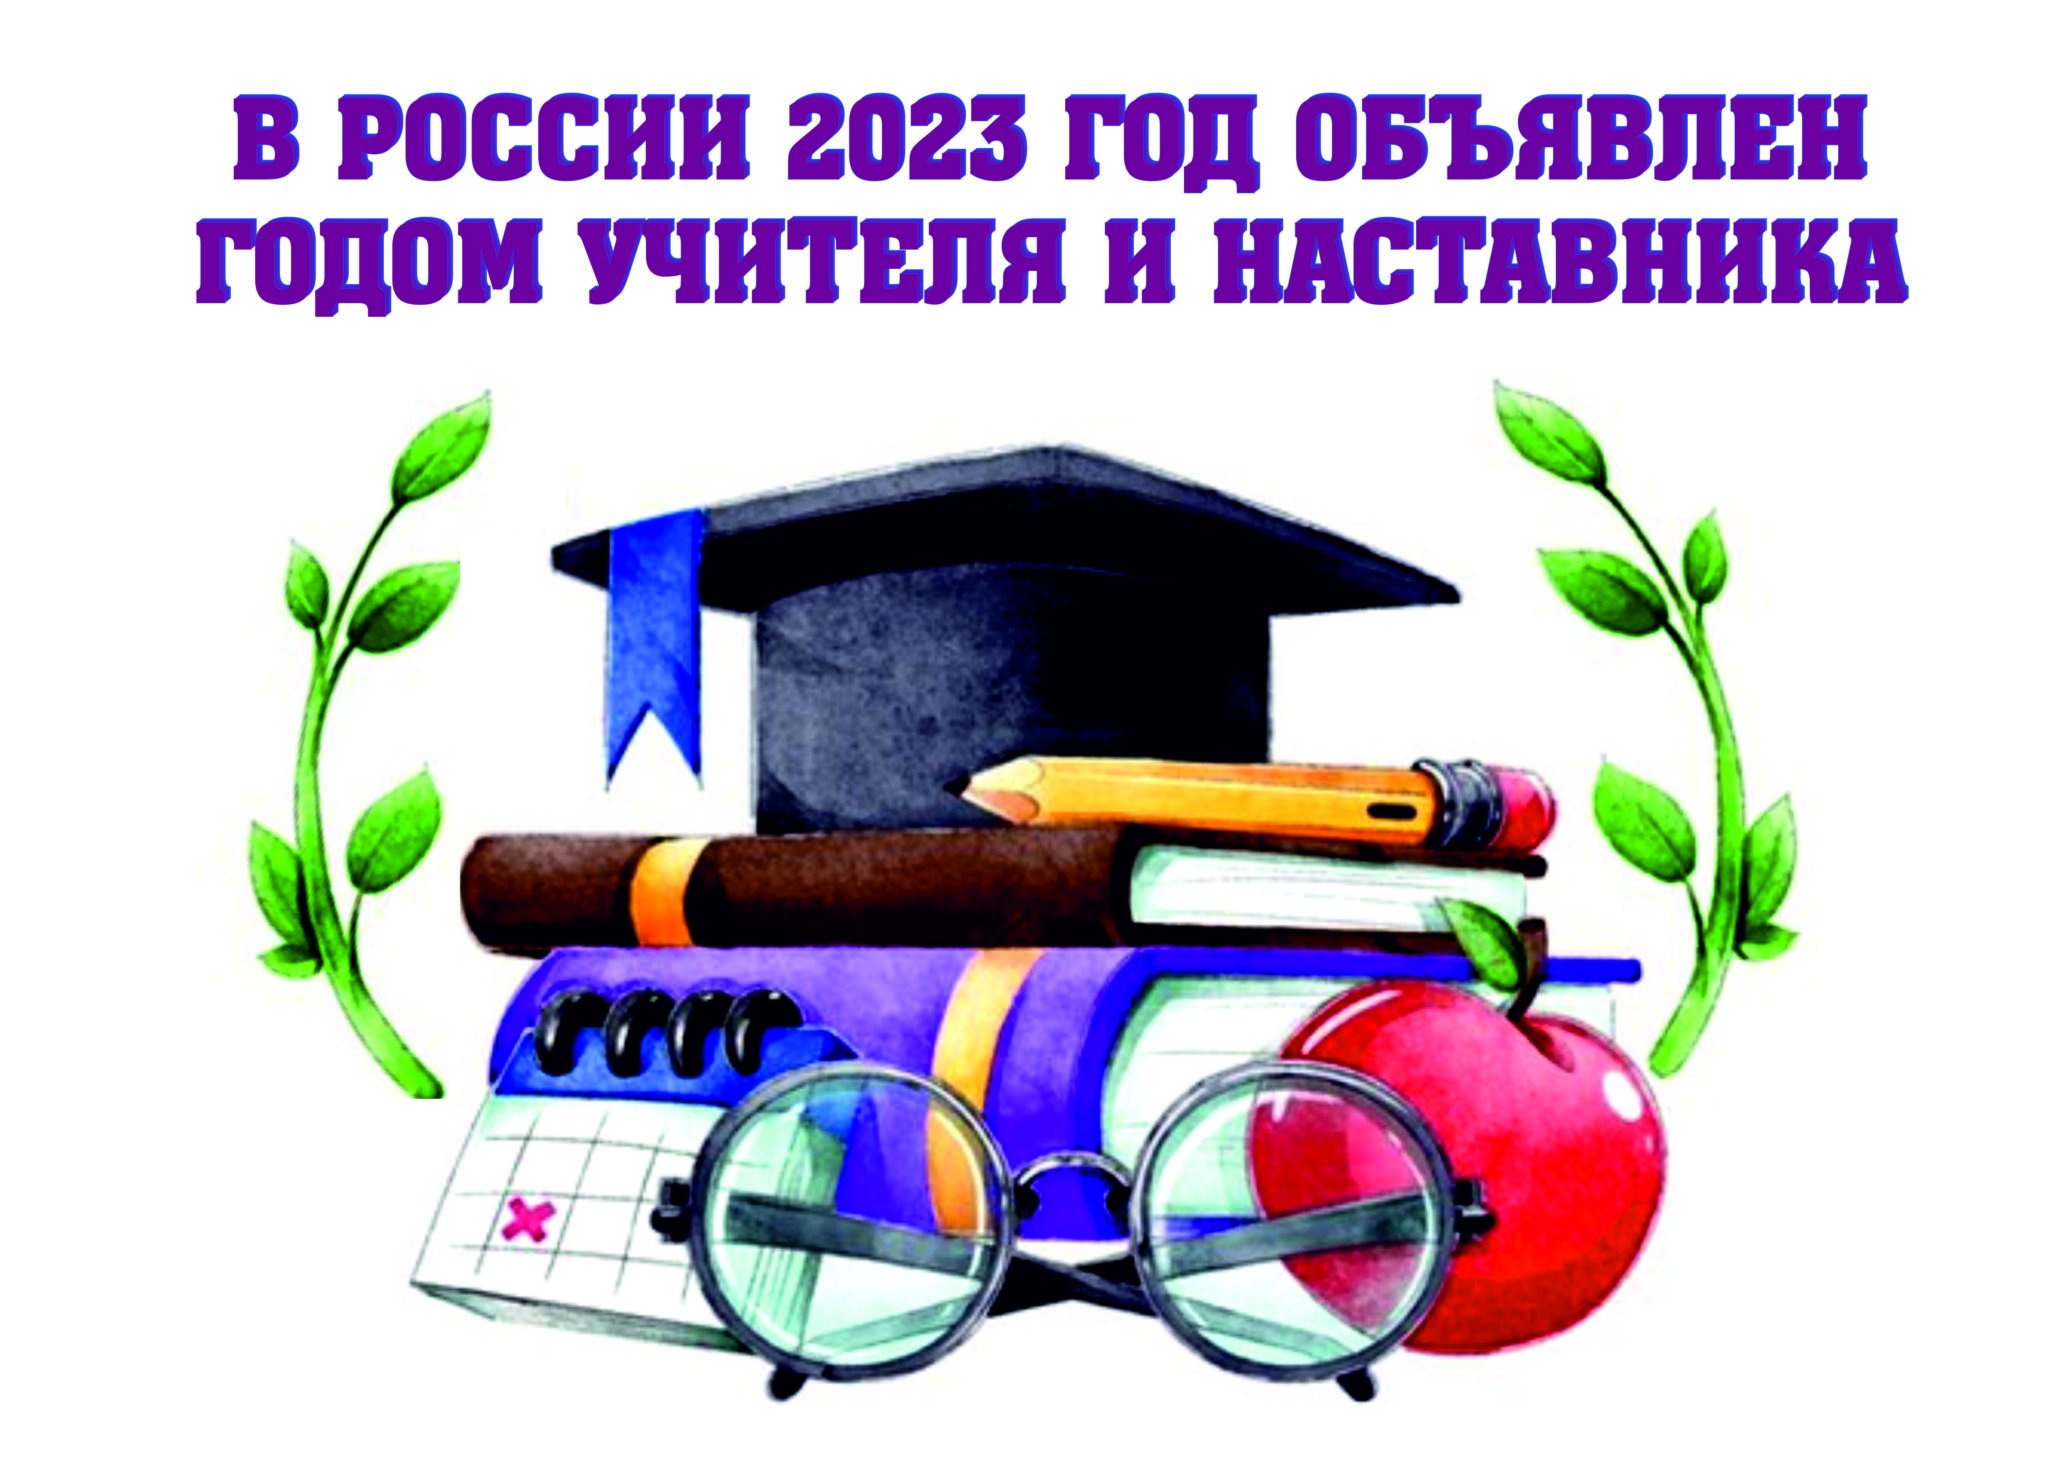 Логотип года педагога и наставника